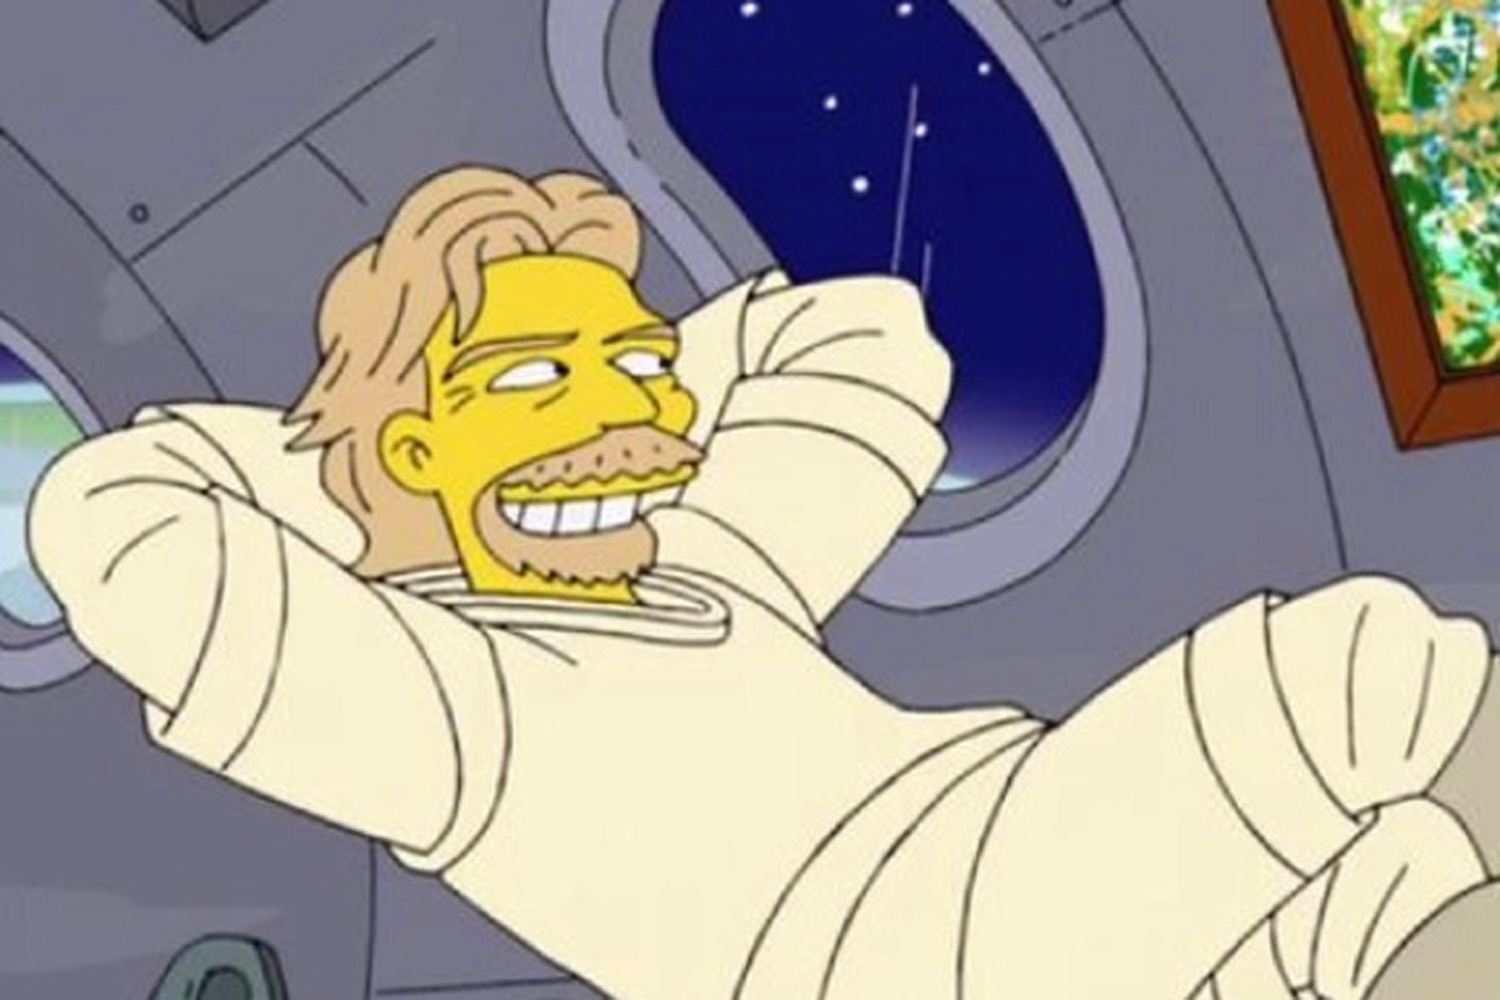 Οι Simpsons είχαν προβλέψει το ταξίδι του Μπράνσον στο διάστημα - Ενθουσιασμός στο Twitter